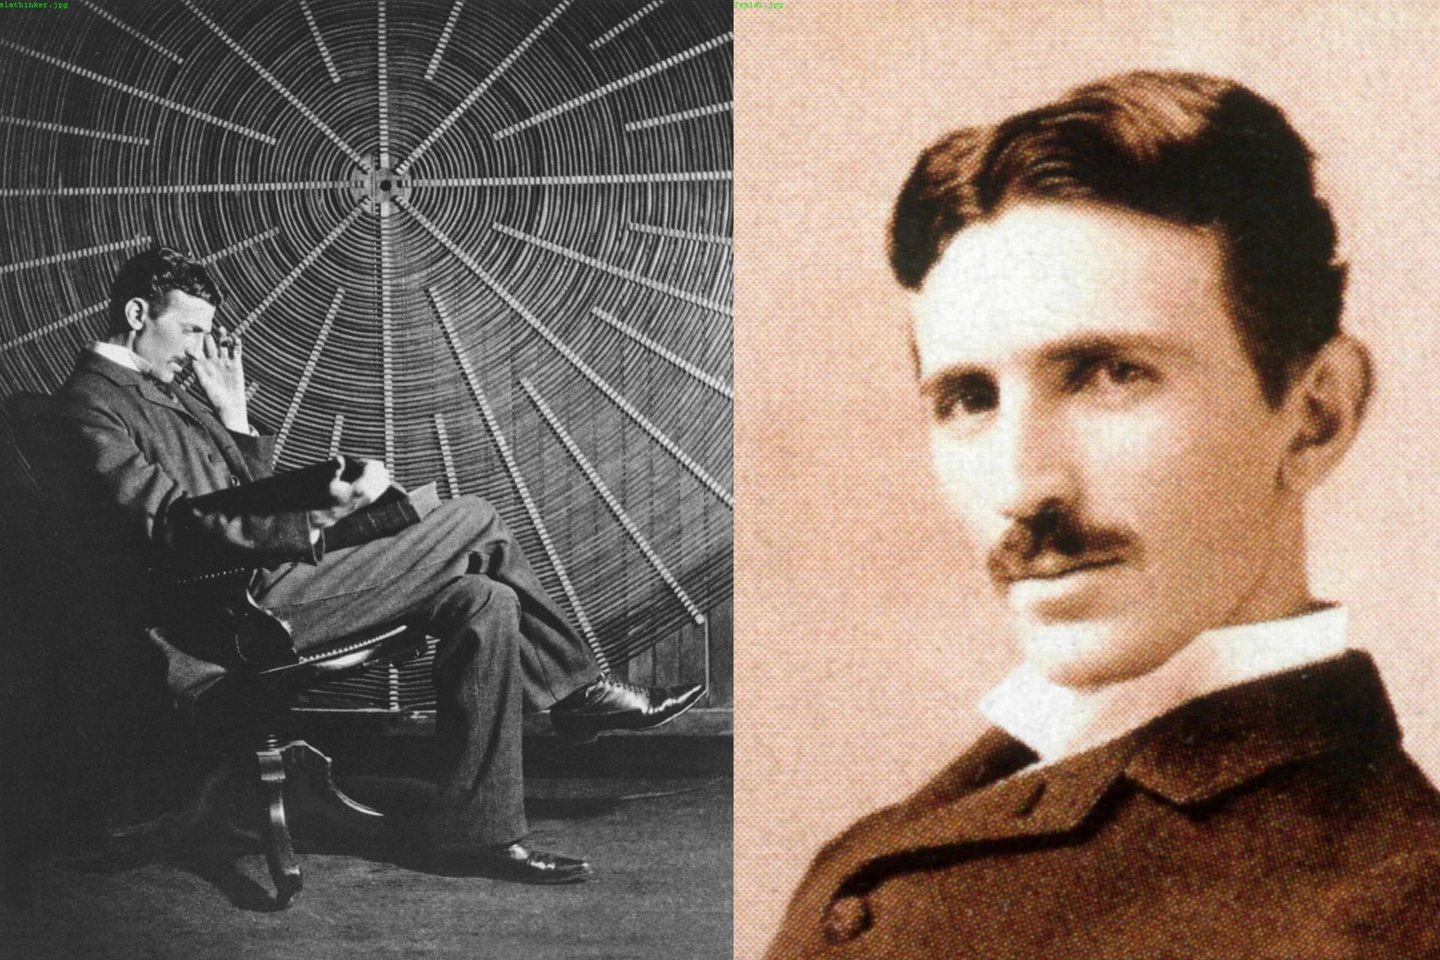 ​Serbijos kultūros ministras penktadienį paragino Europos Sąjungos institucijas atsiprašyti už tai, kad bloko oficialiame tinklapyje Nikola Tesla, garsusis šiuolaikinės elektros inžinerijos pionierius, vadinamas kroatu. <br>Commons.wikimedia.org nuotr.